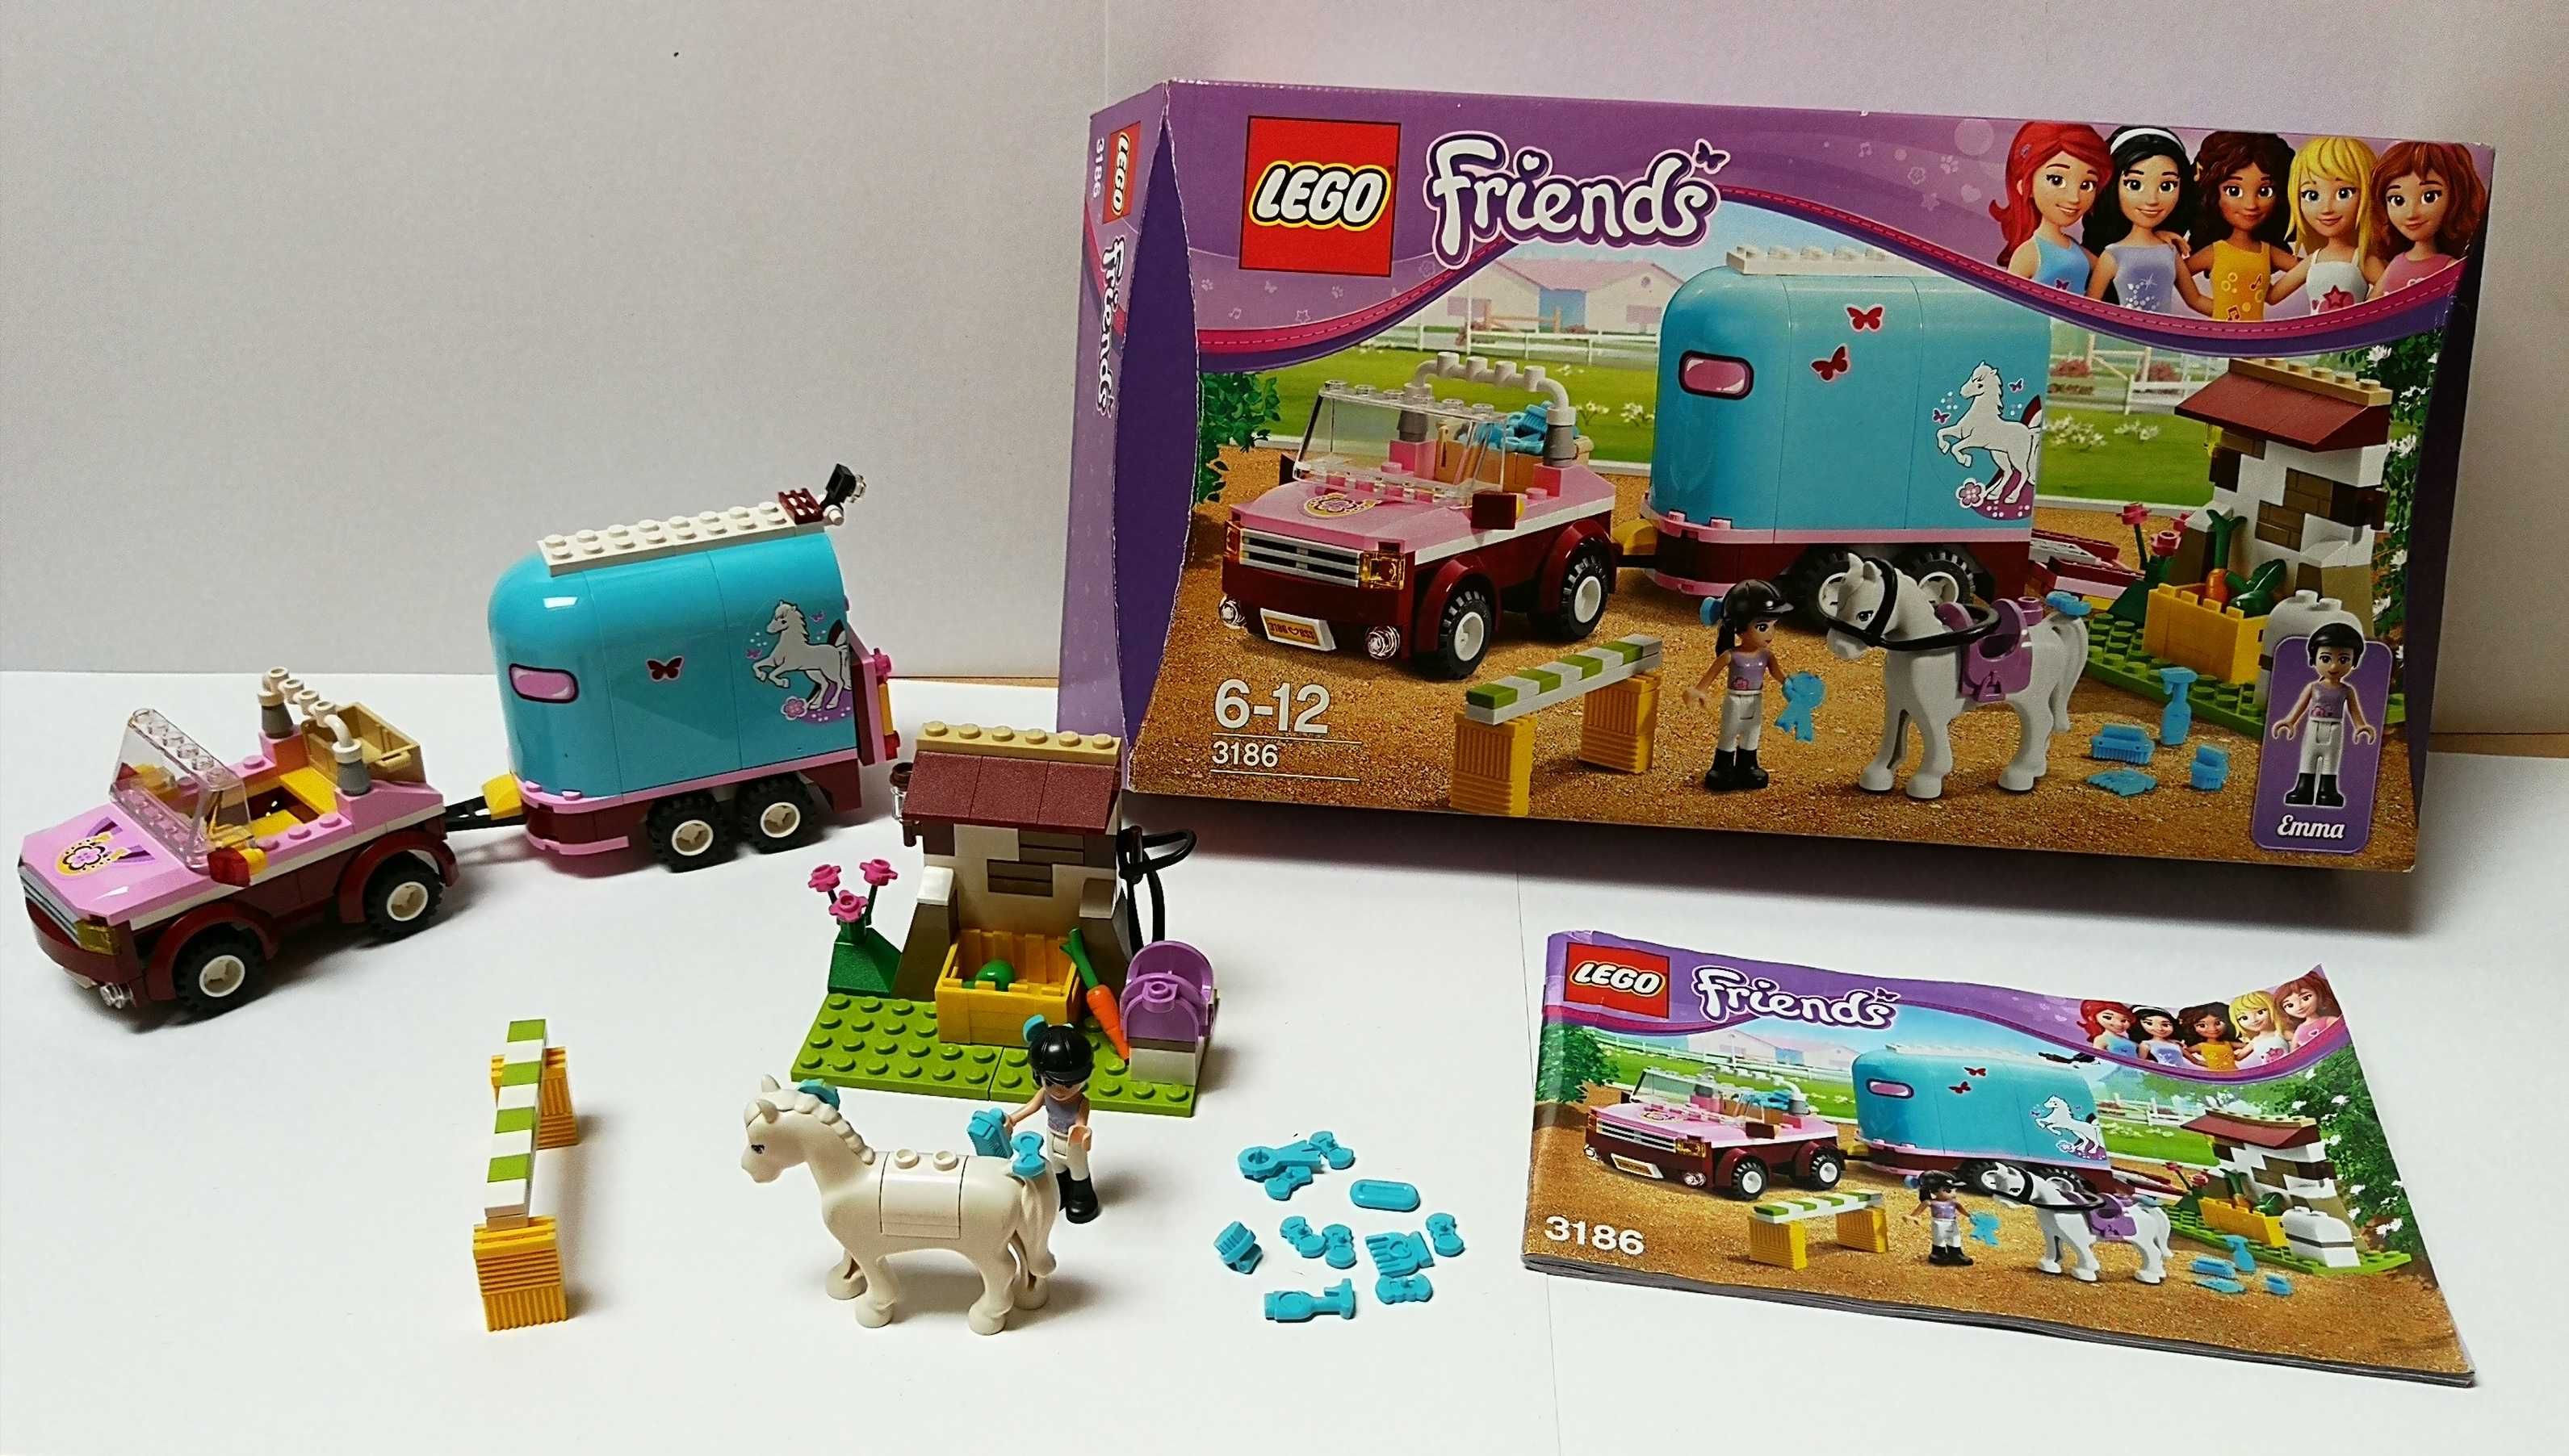 Zestaw Lego Friends EMMA 3186 Przyczepa dla konia + kotek 41114 + żółw